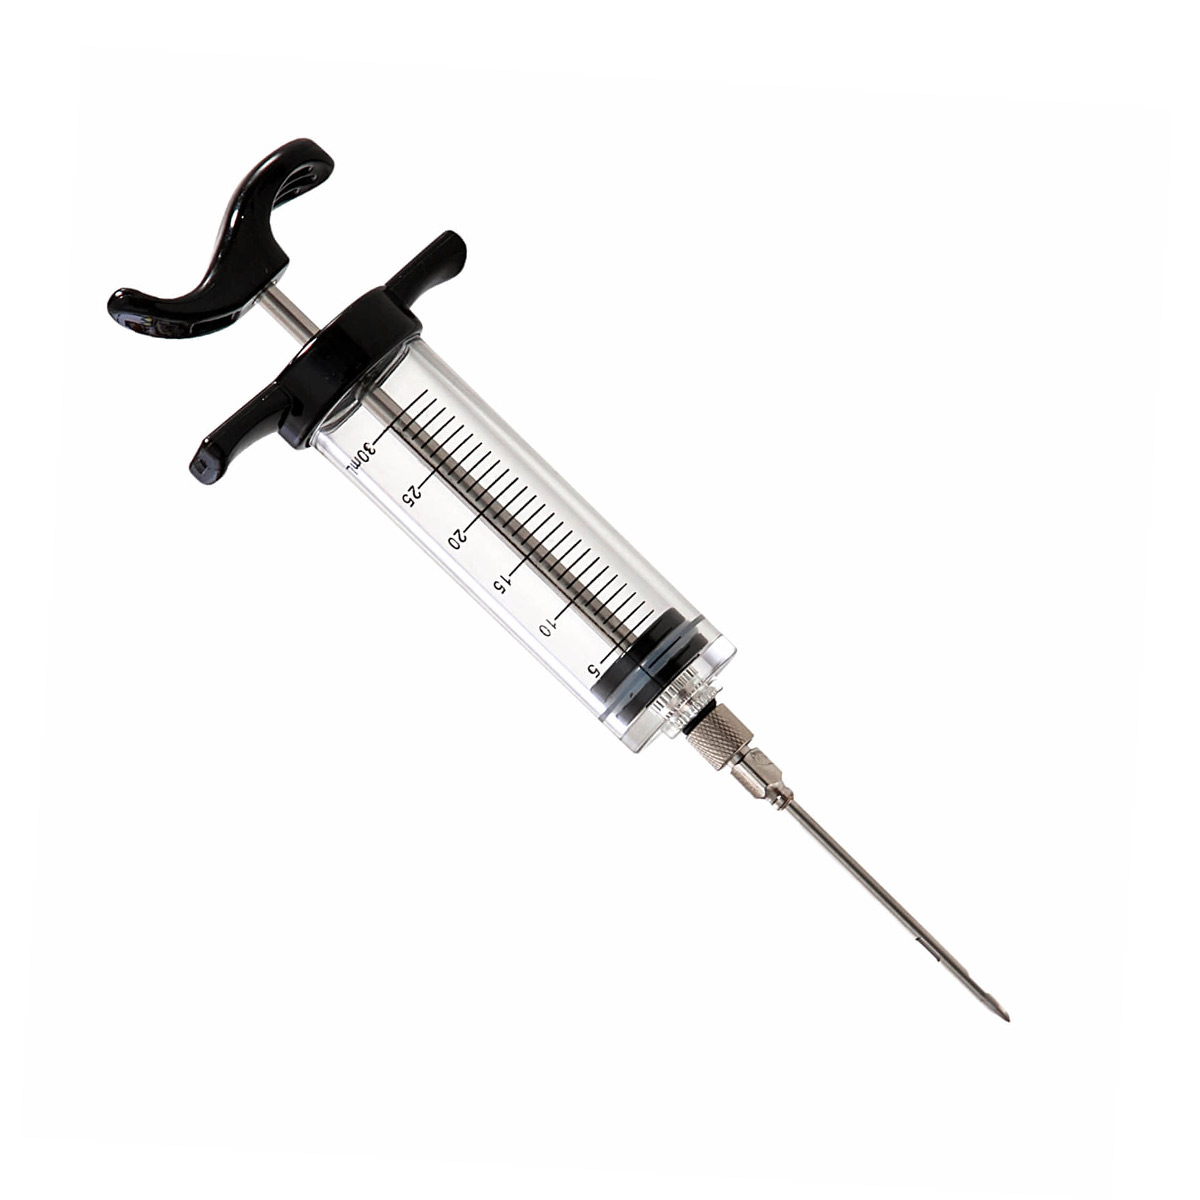 Marinier- und Aromaspritze - 30ml - 6cm Nadel (Injektor) | Grill Experte